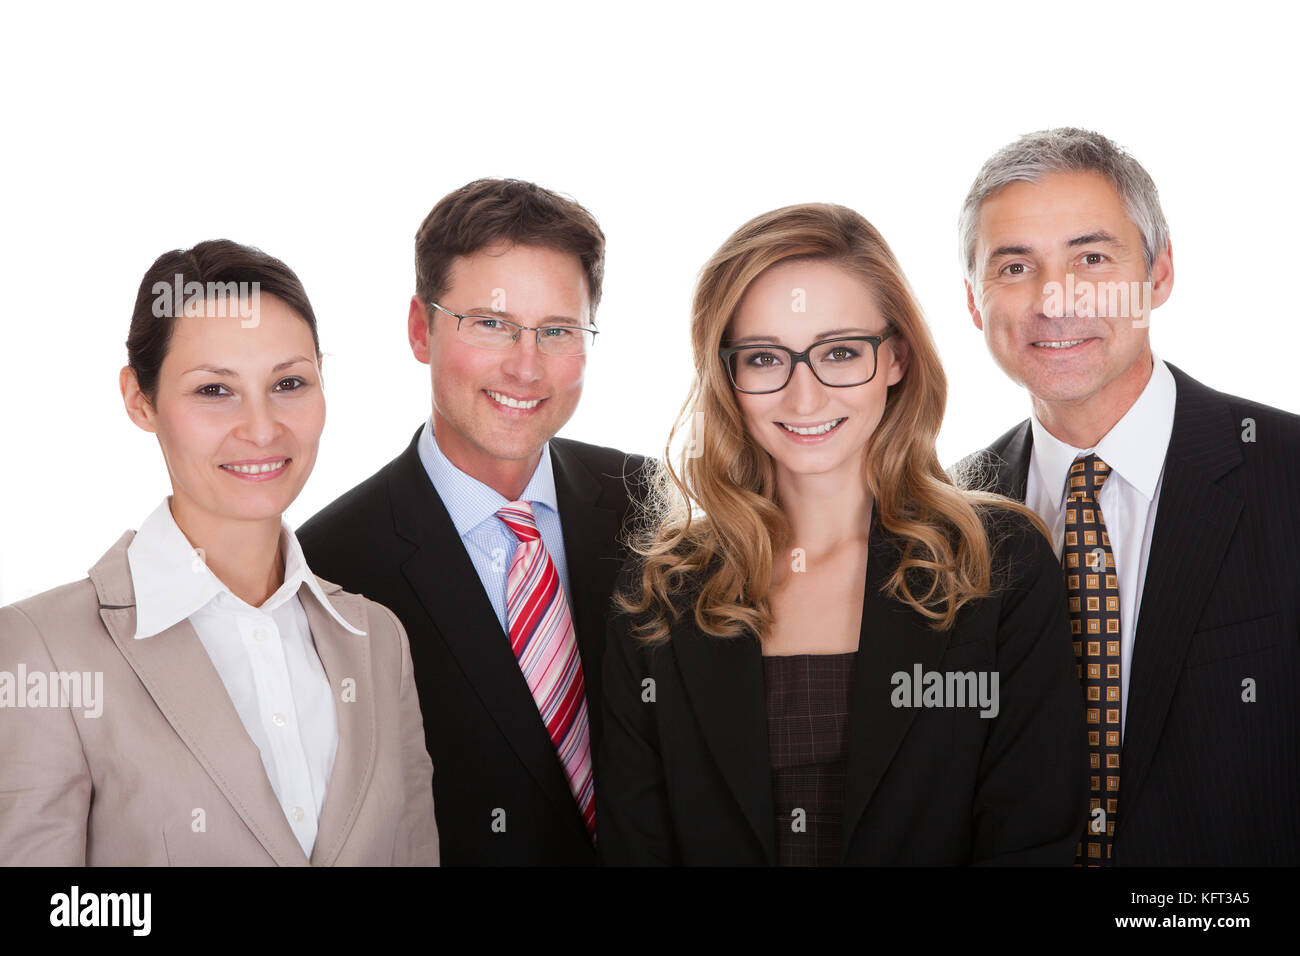 Lächelnd Gruppe von stilvollen Business-Profis stehen in einer Reihe mit den Armen gefaltet, schaut in die Kamera, isoliert auf weiss Stockfoto